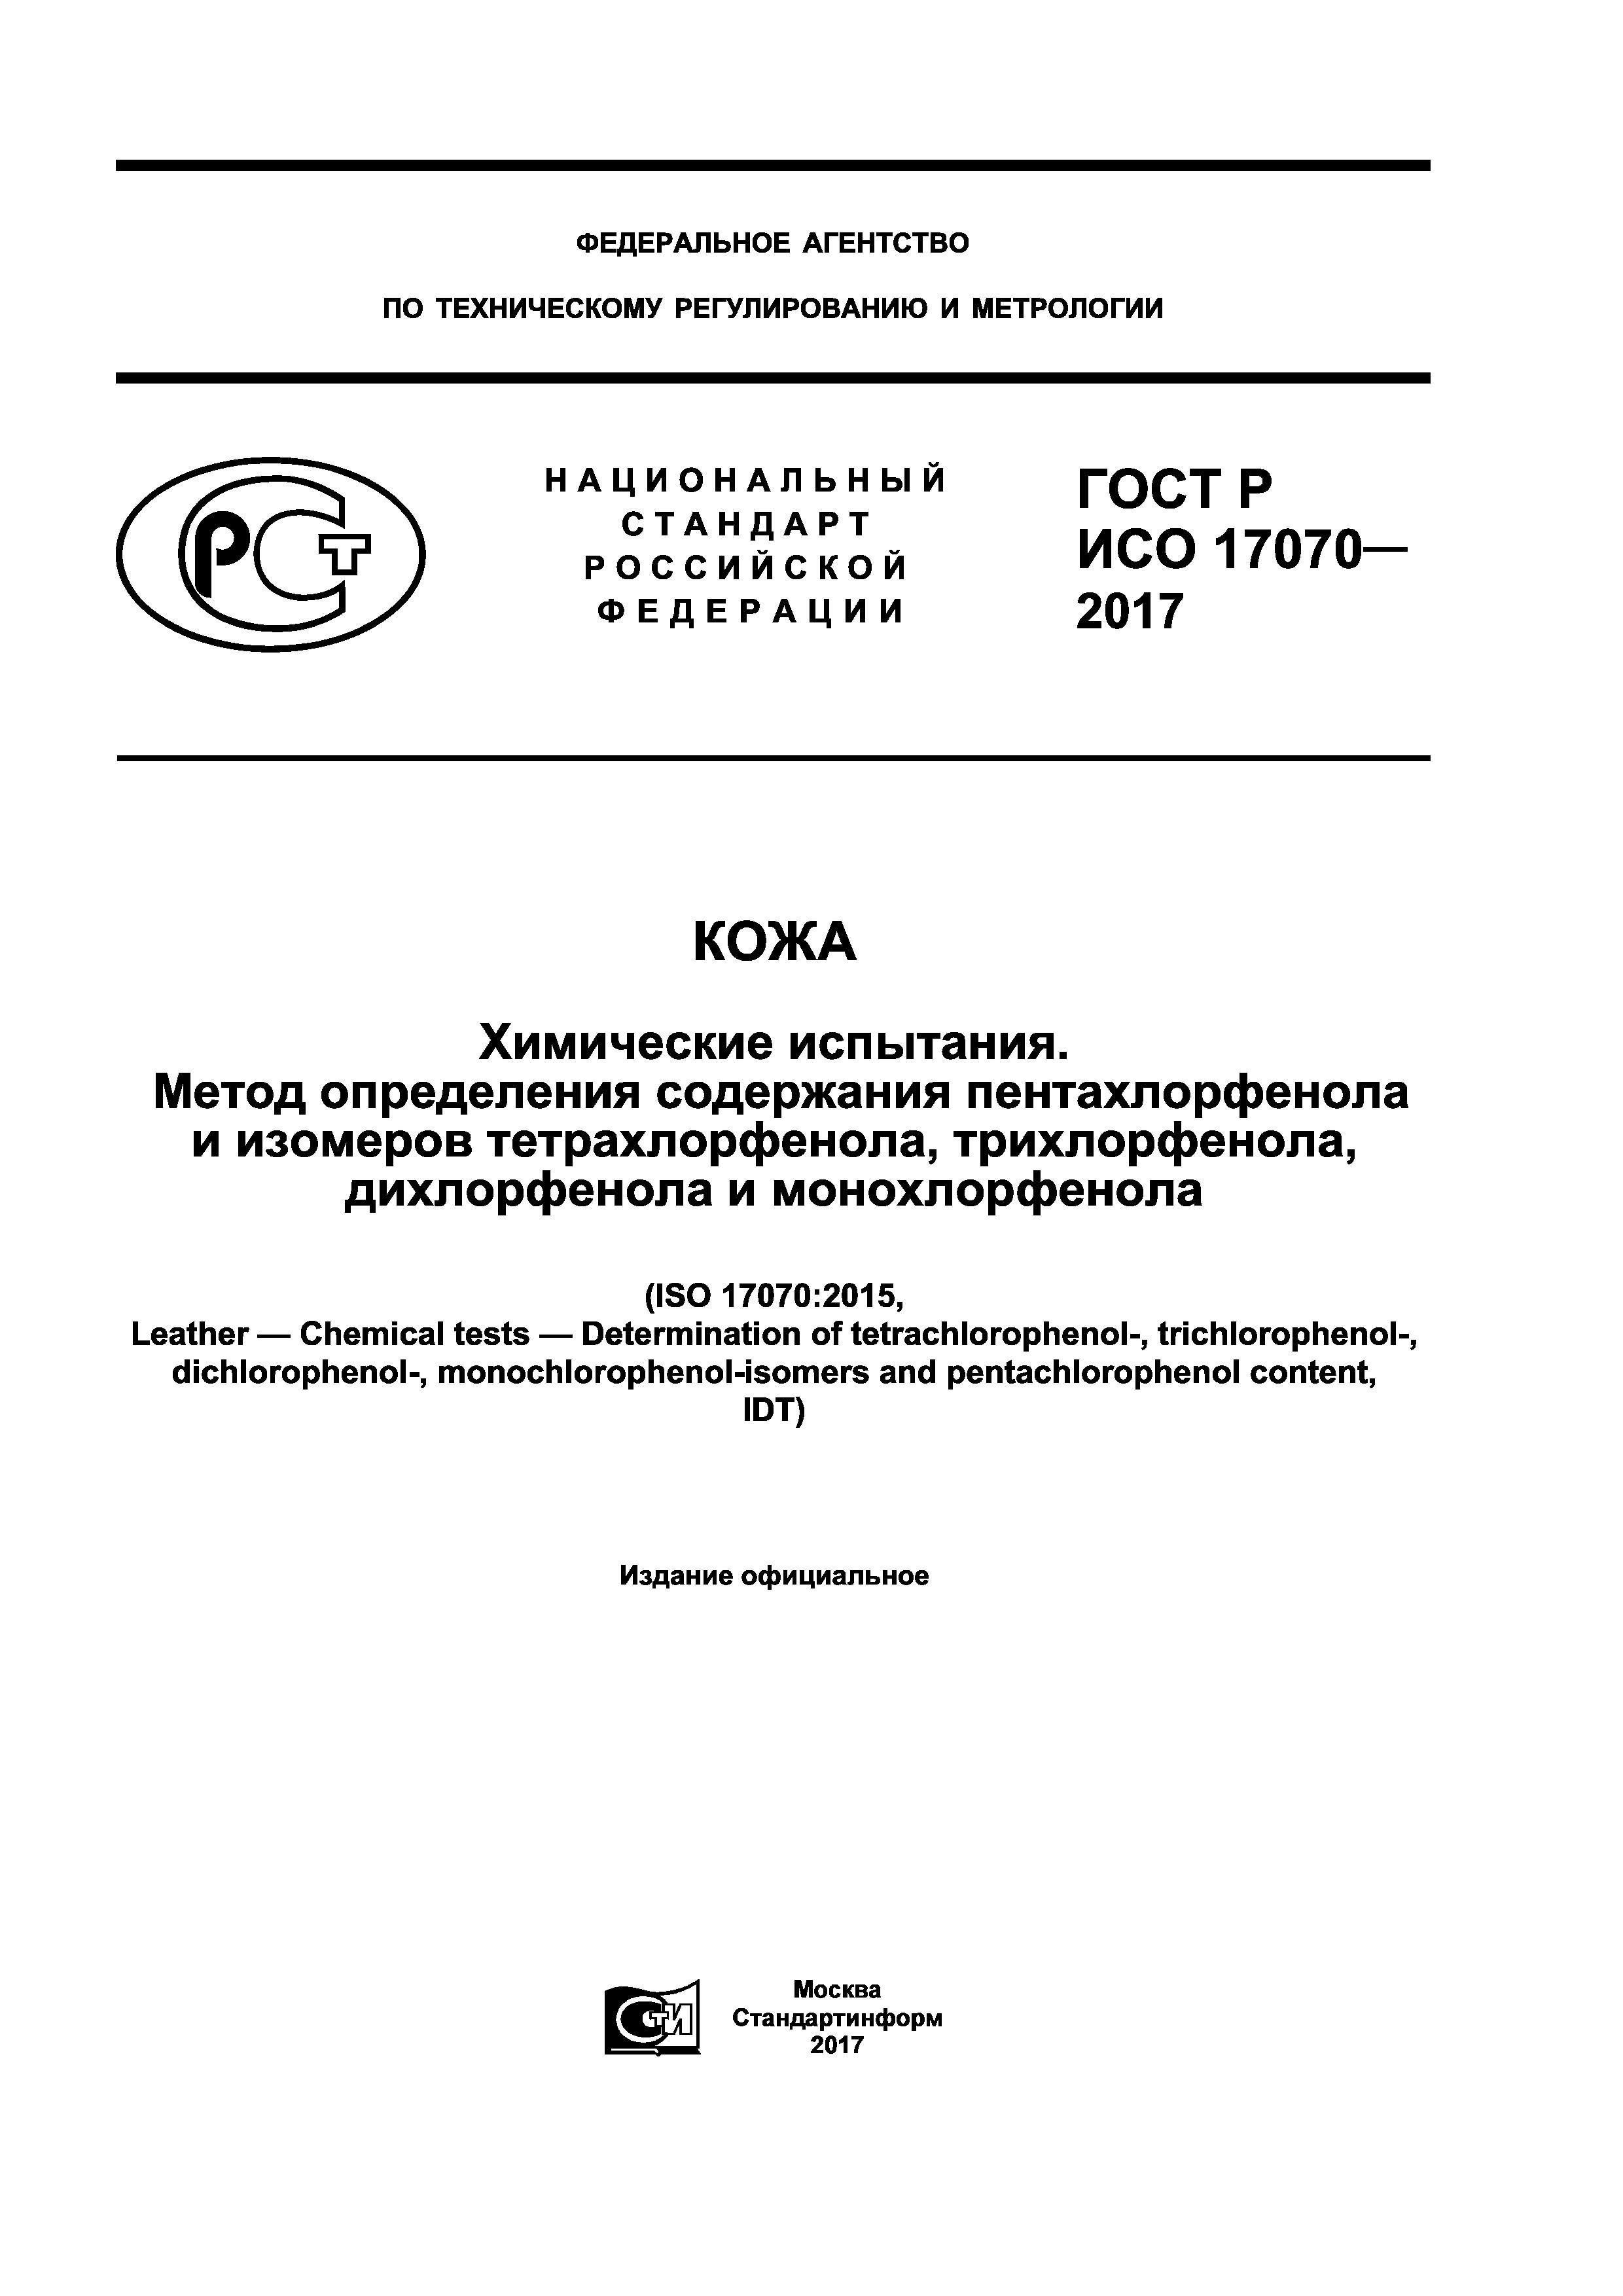 ГОСТ Р ИСО 17070-2017